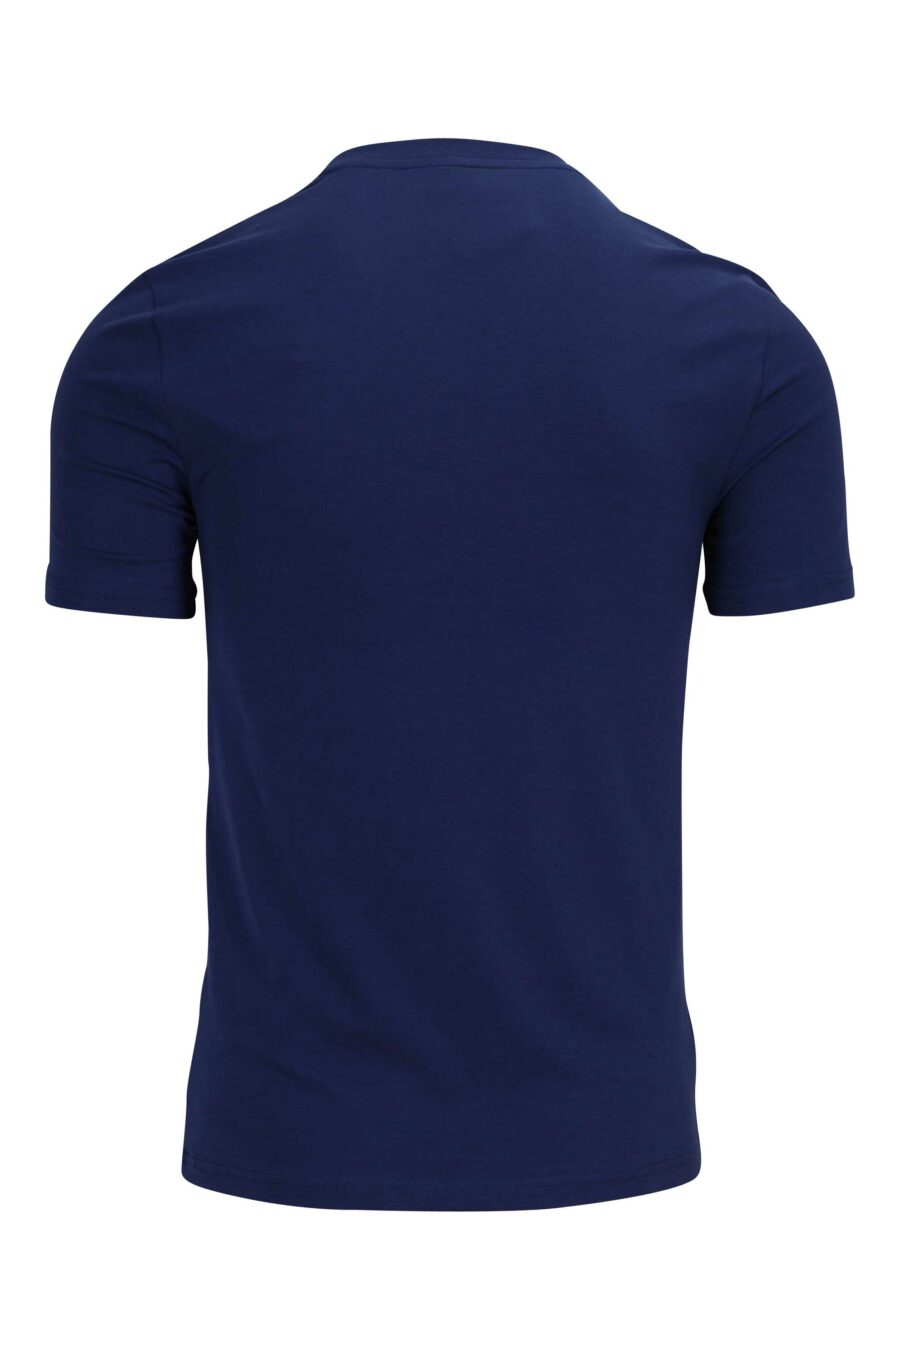 T-shirt bleu marine avec maxilogue noir - 889316649383 1